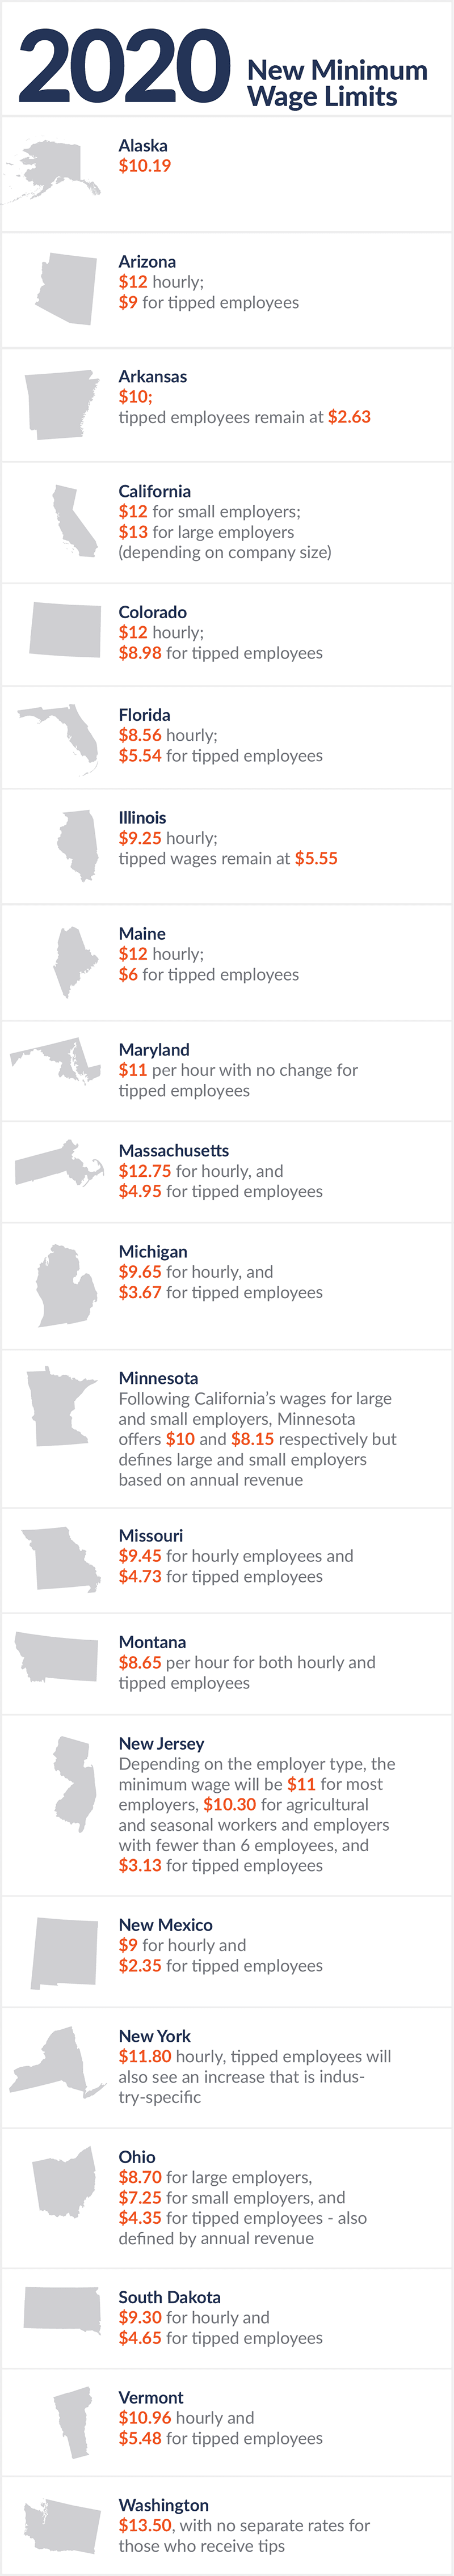 2020 Minimum Wage Limit by State